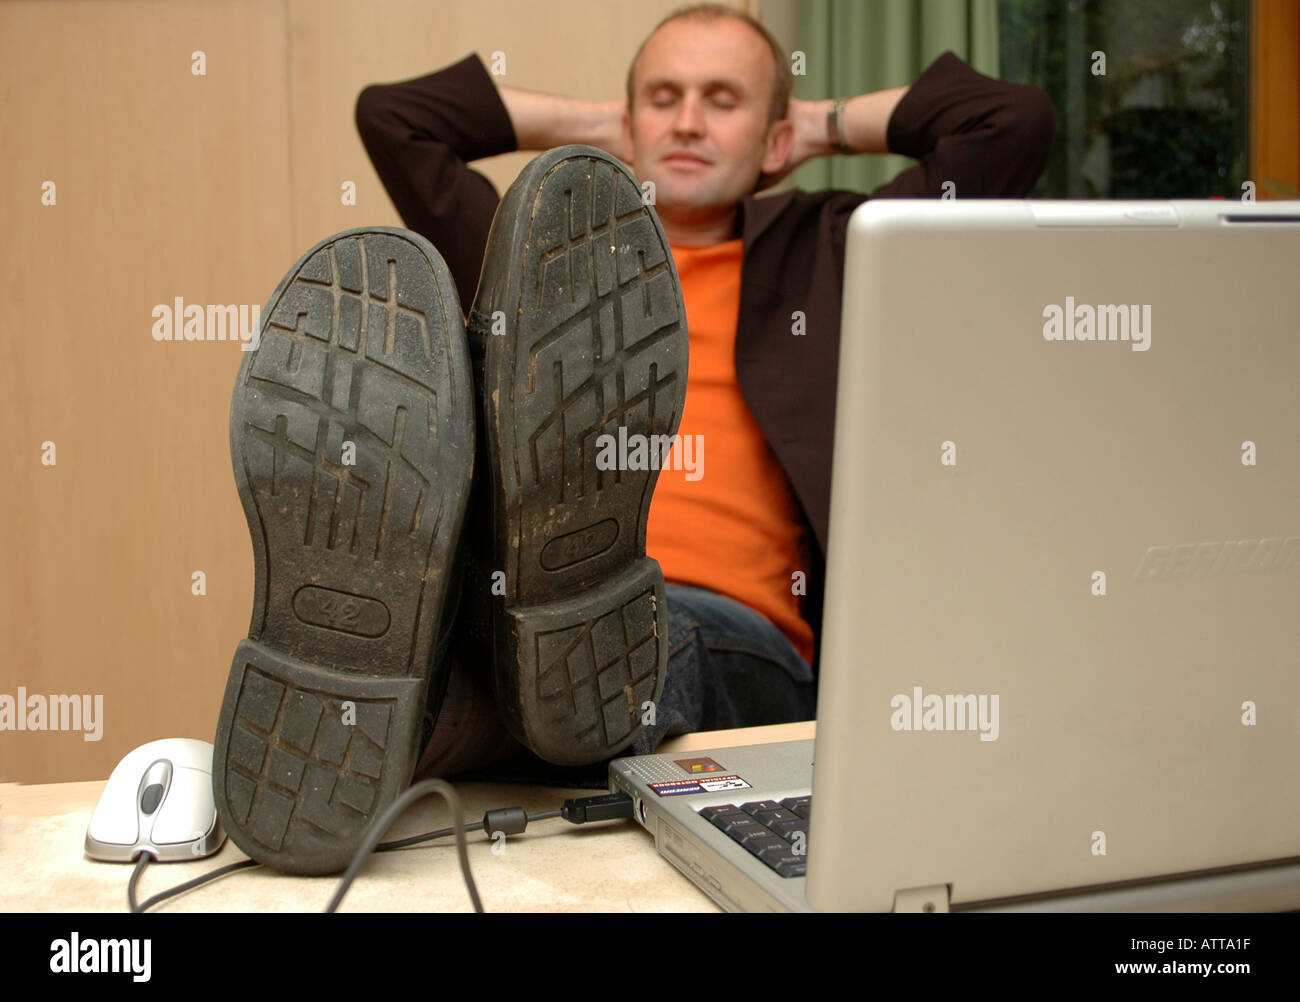 MR Fauler Büroangestellter schläft am Arbeitsplatz MR lazy office worker Bildagentur online Begsteiger Stock Photo